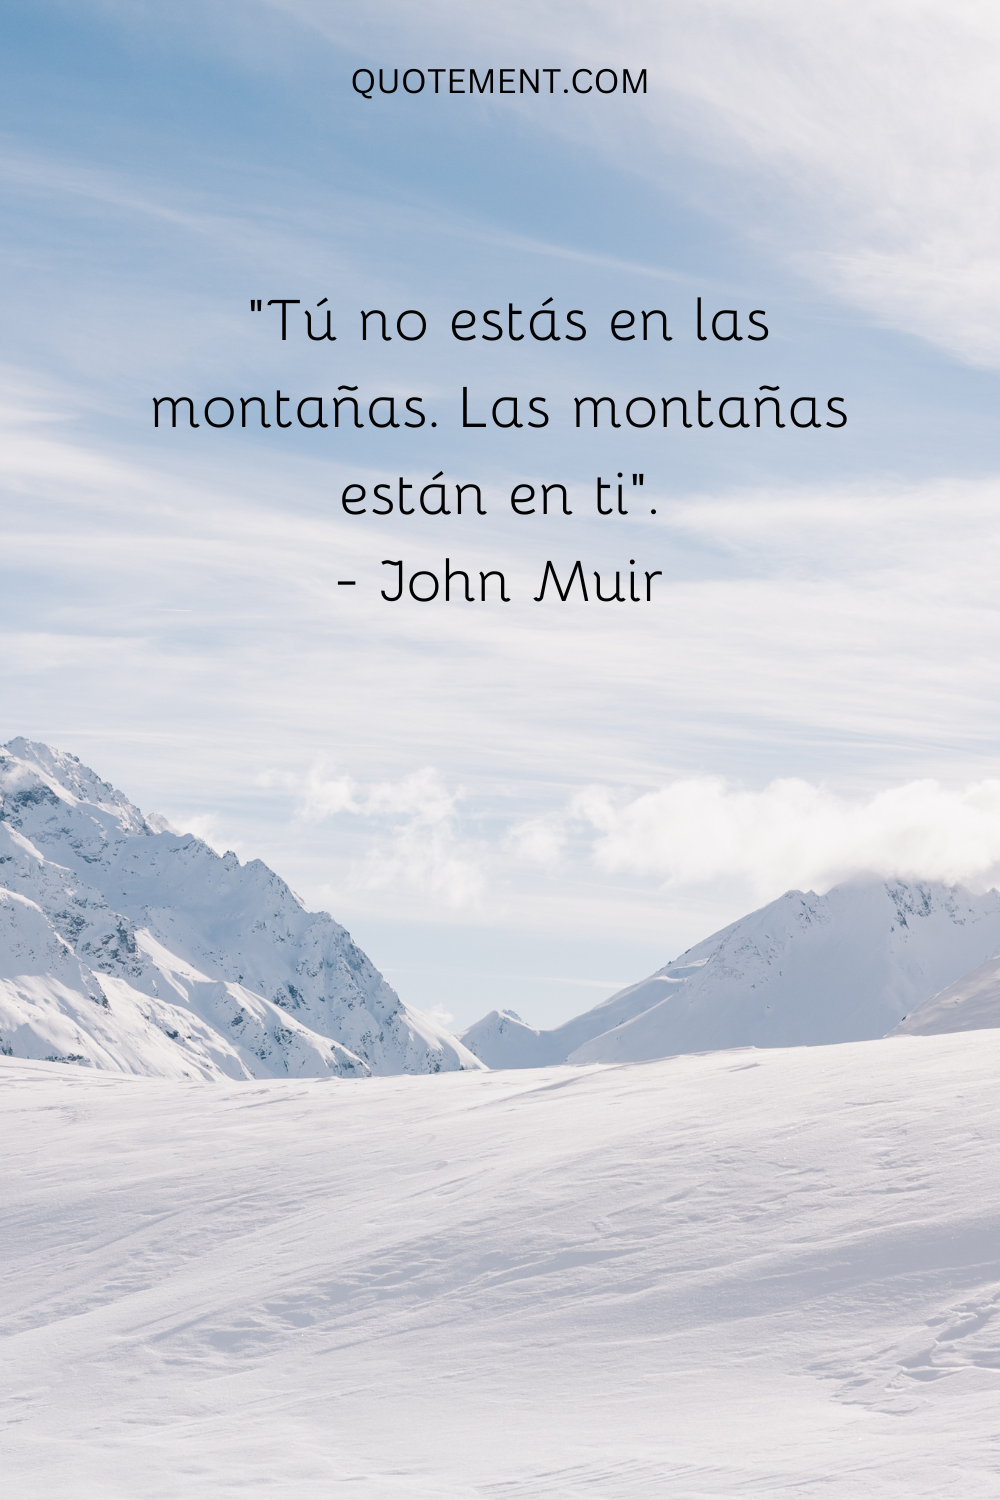 "Tú no estás en las montañas. Las montañas están en ti". - John Muir